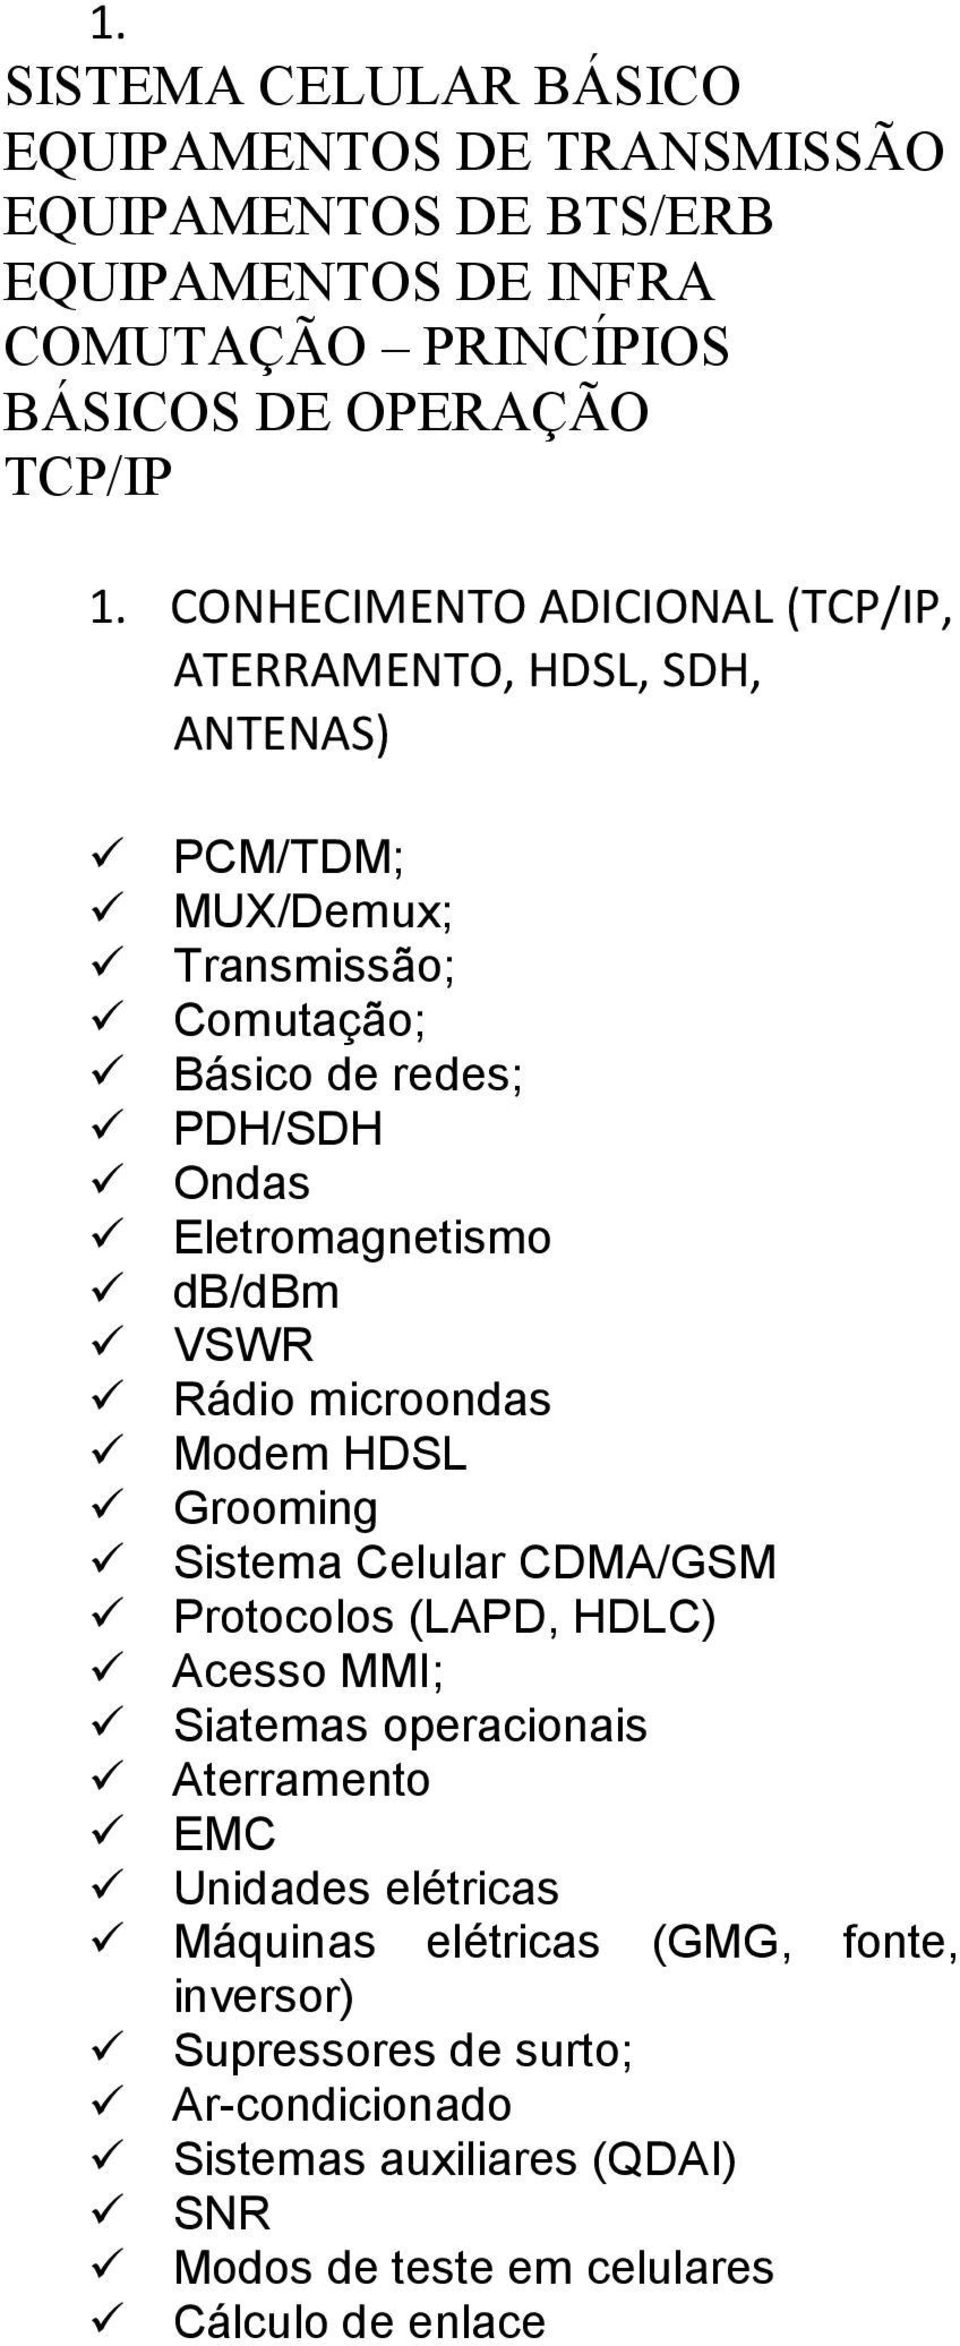 db/dbm VSWR Rádio microondas Modem HDSL Grooming Sistema Celular CDMA/GSM Protocolos (LAPD, HDLC) Acesso MMI; Siatemas operacionais Aterramento EMC Unidades